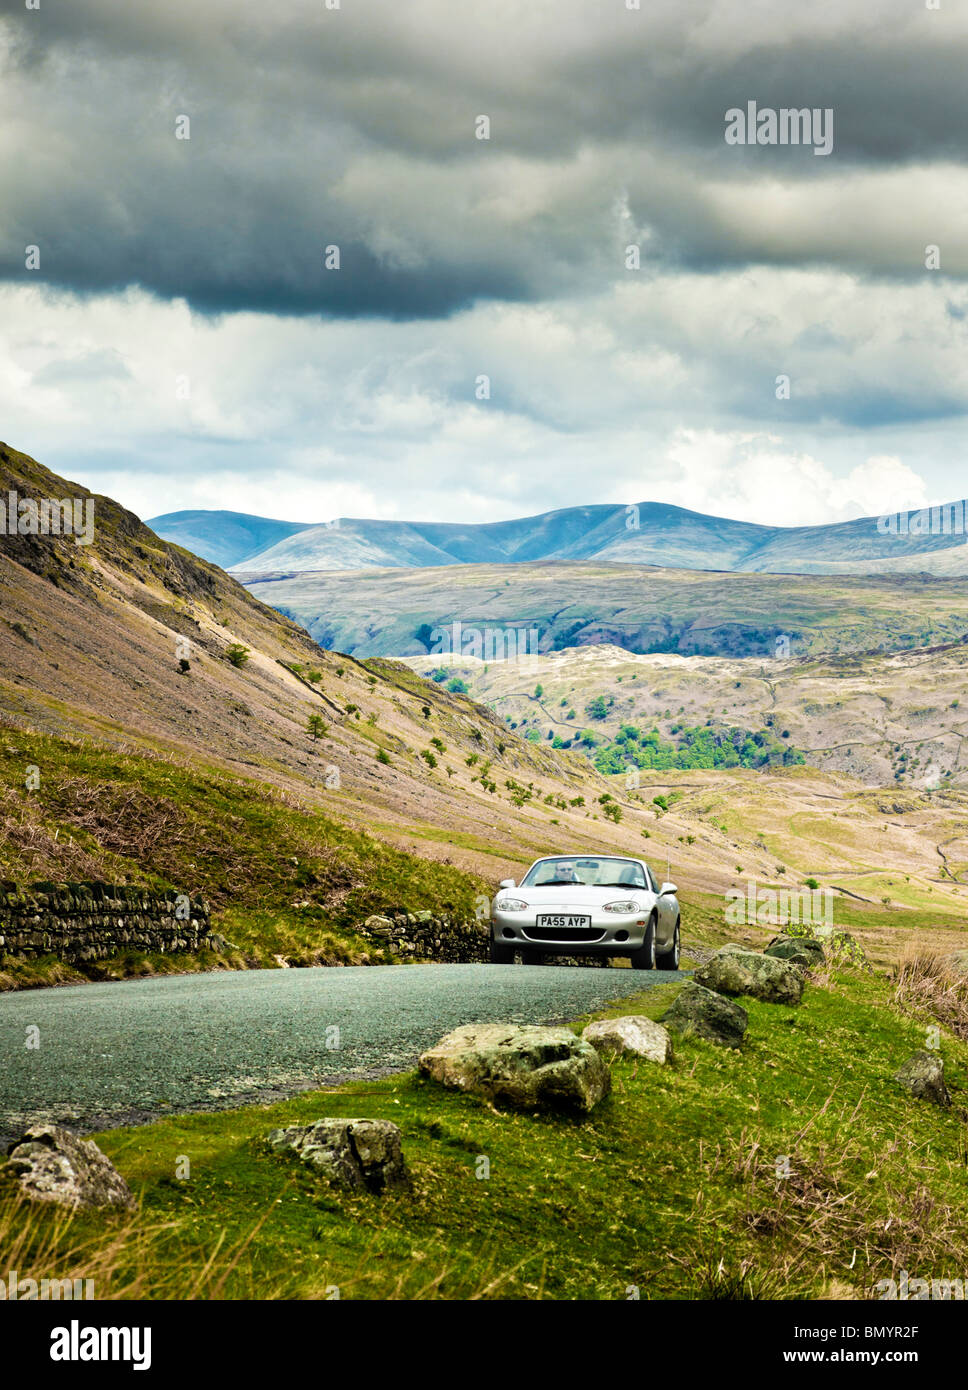 La conduite, UK, conduite de voiture de sport sur une route de montagne dans la région du Lake District, d'un voyage dans la région de Cumbria, Angleterre, Royaume-Uni Banque D'Images